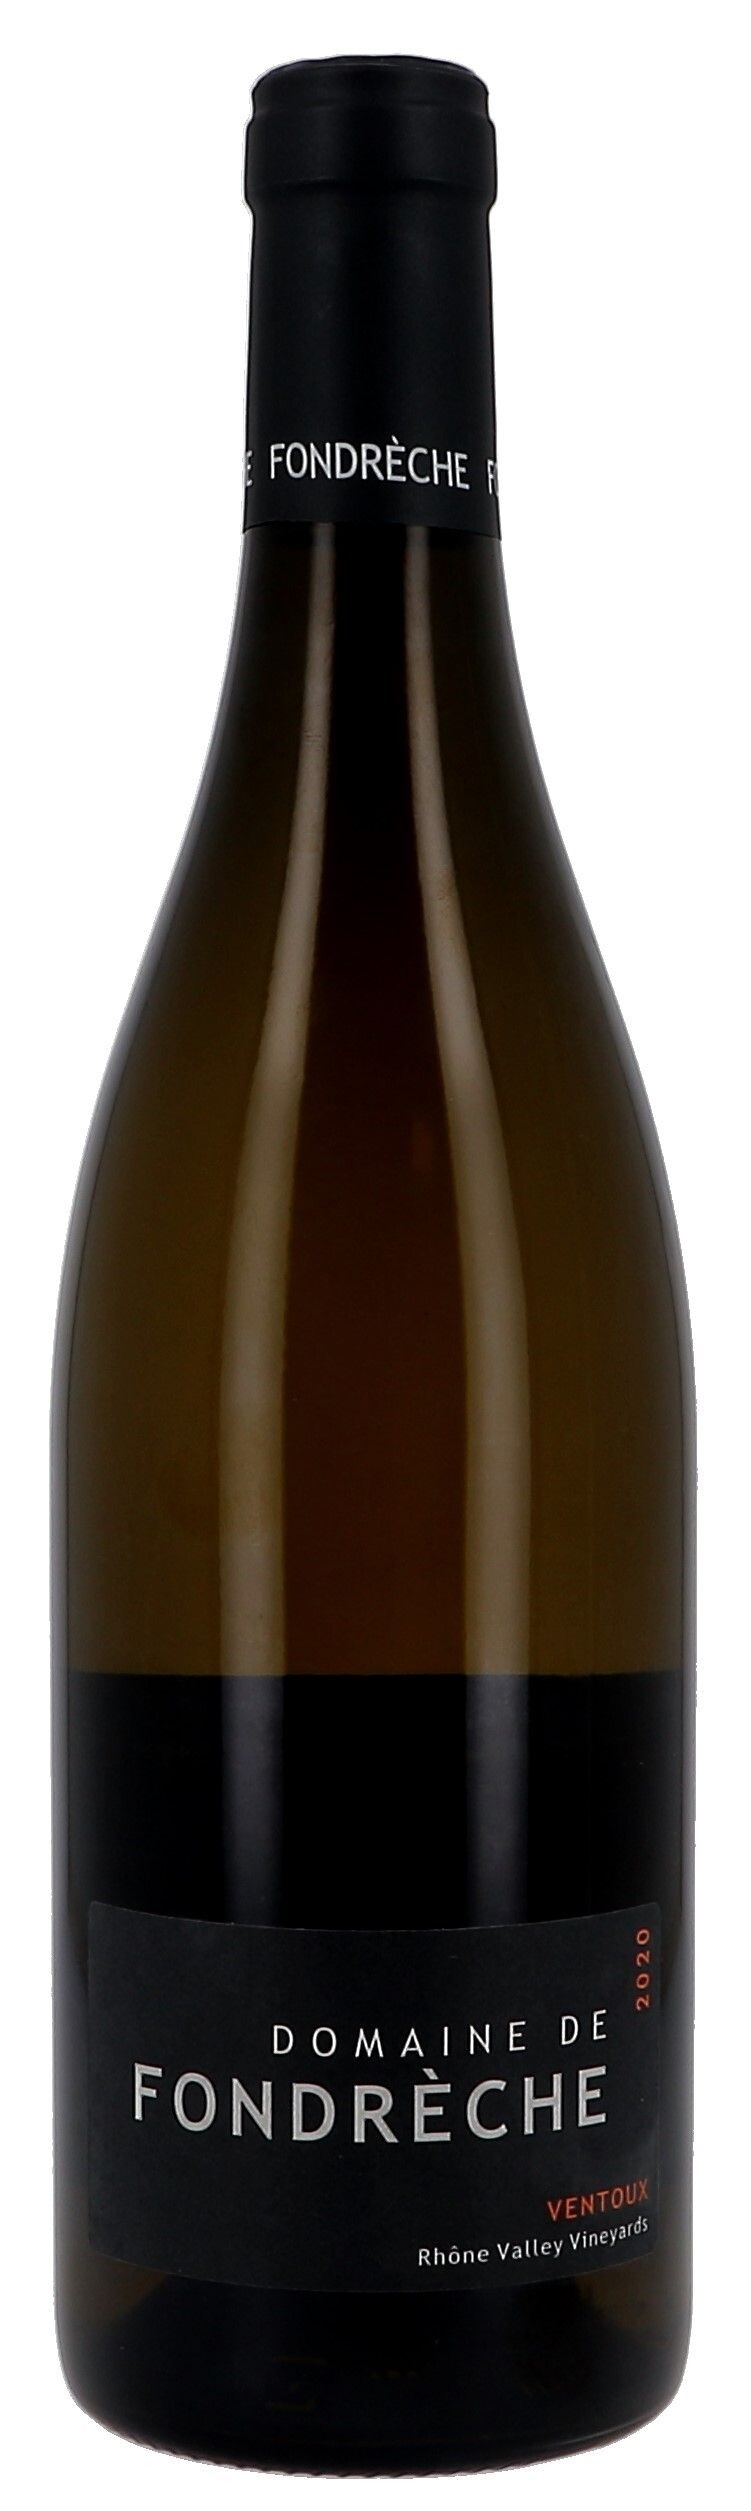 Domaine de Fondreche 75cl White 2020 Ventoux Wine